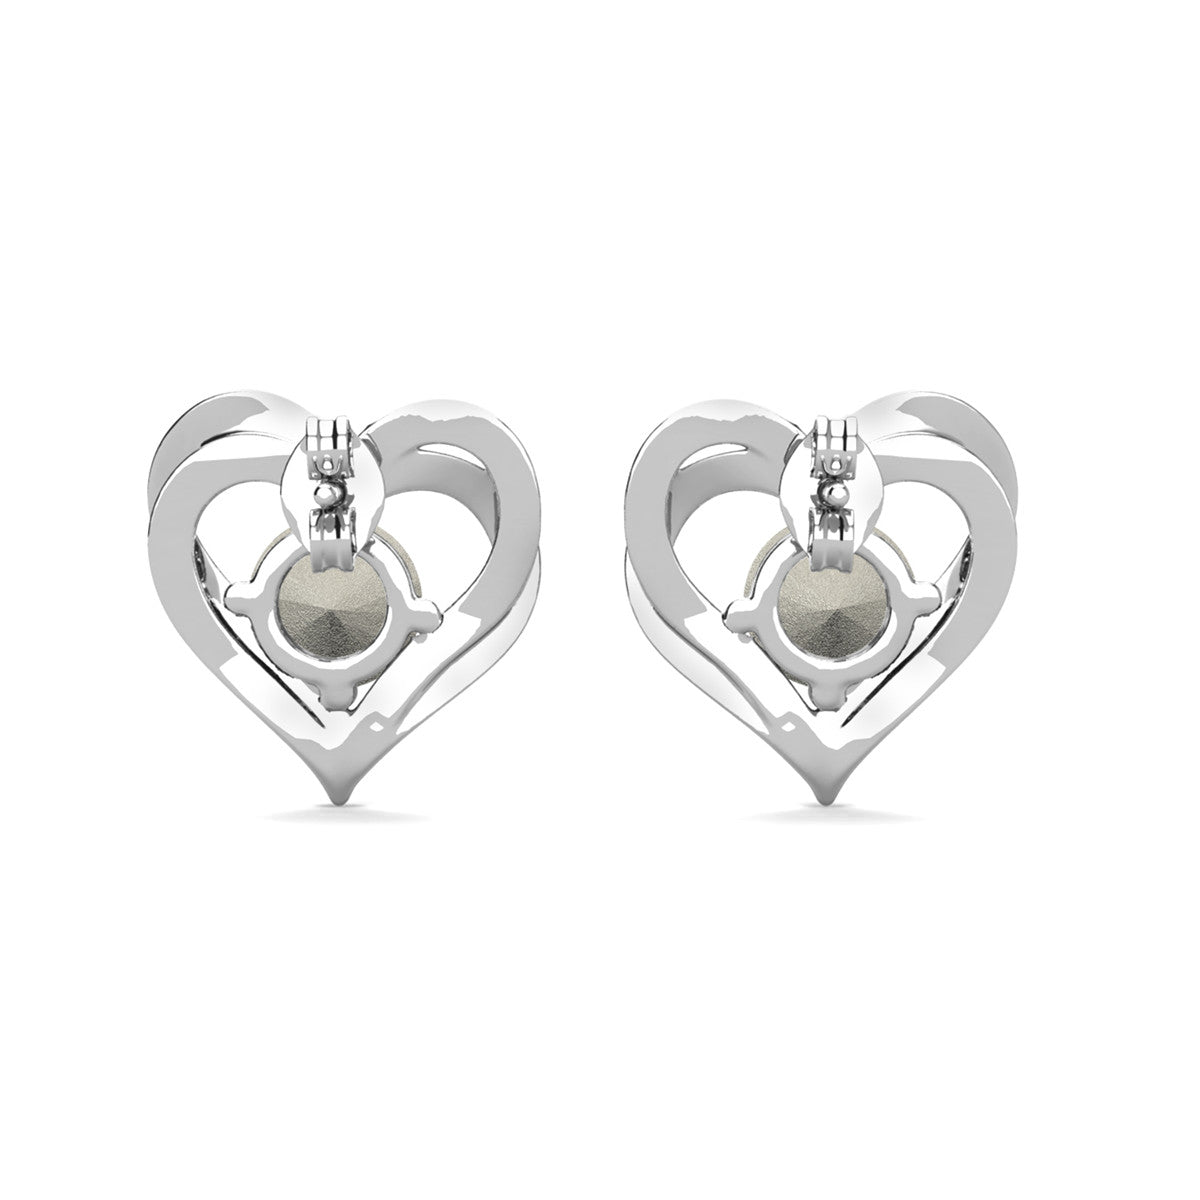 Forever June Birthstone Alexandrite Earrings, 18k White Gold Plated Silver Double Heart Crystal Earrings